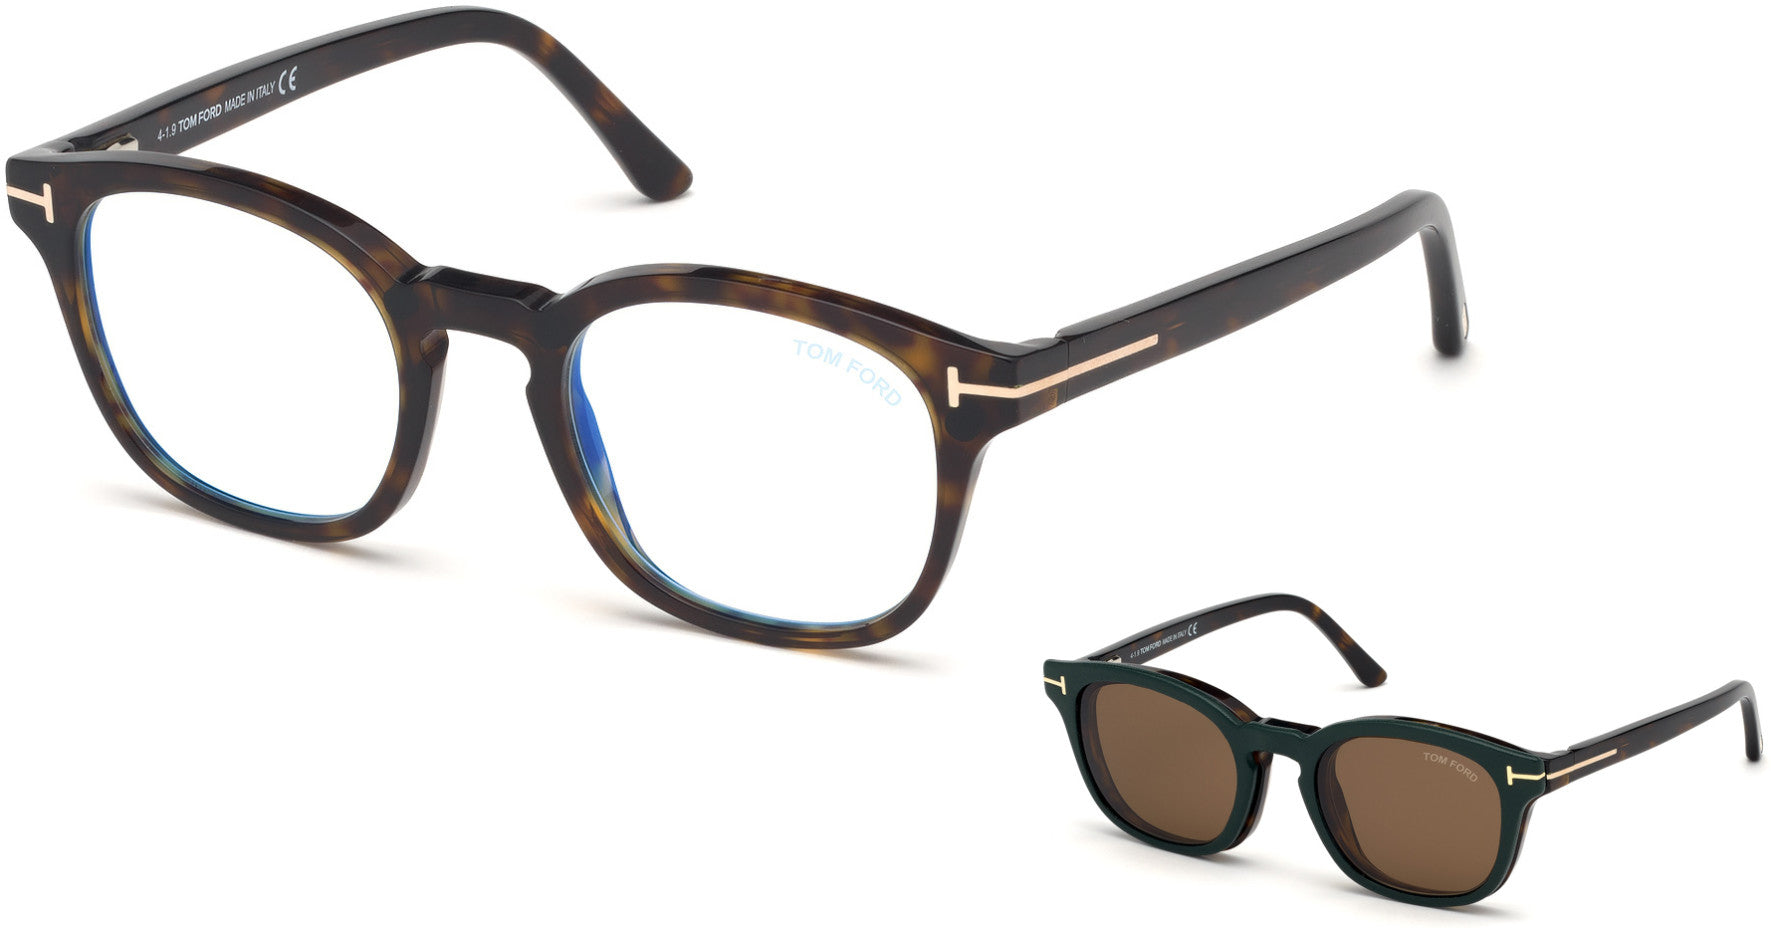 Tom Ford FT5532-B Geometric Eyeglasses 52J-52J - Havana/ Blue Block Lenses, Brown Clip In Green Leather